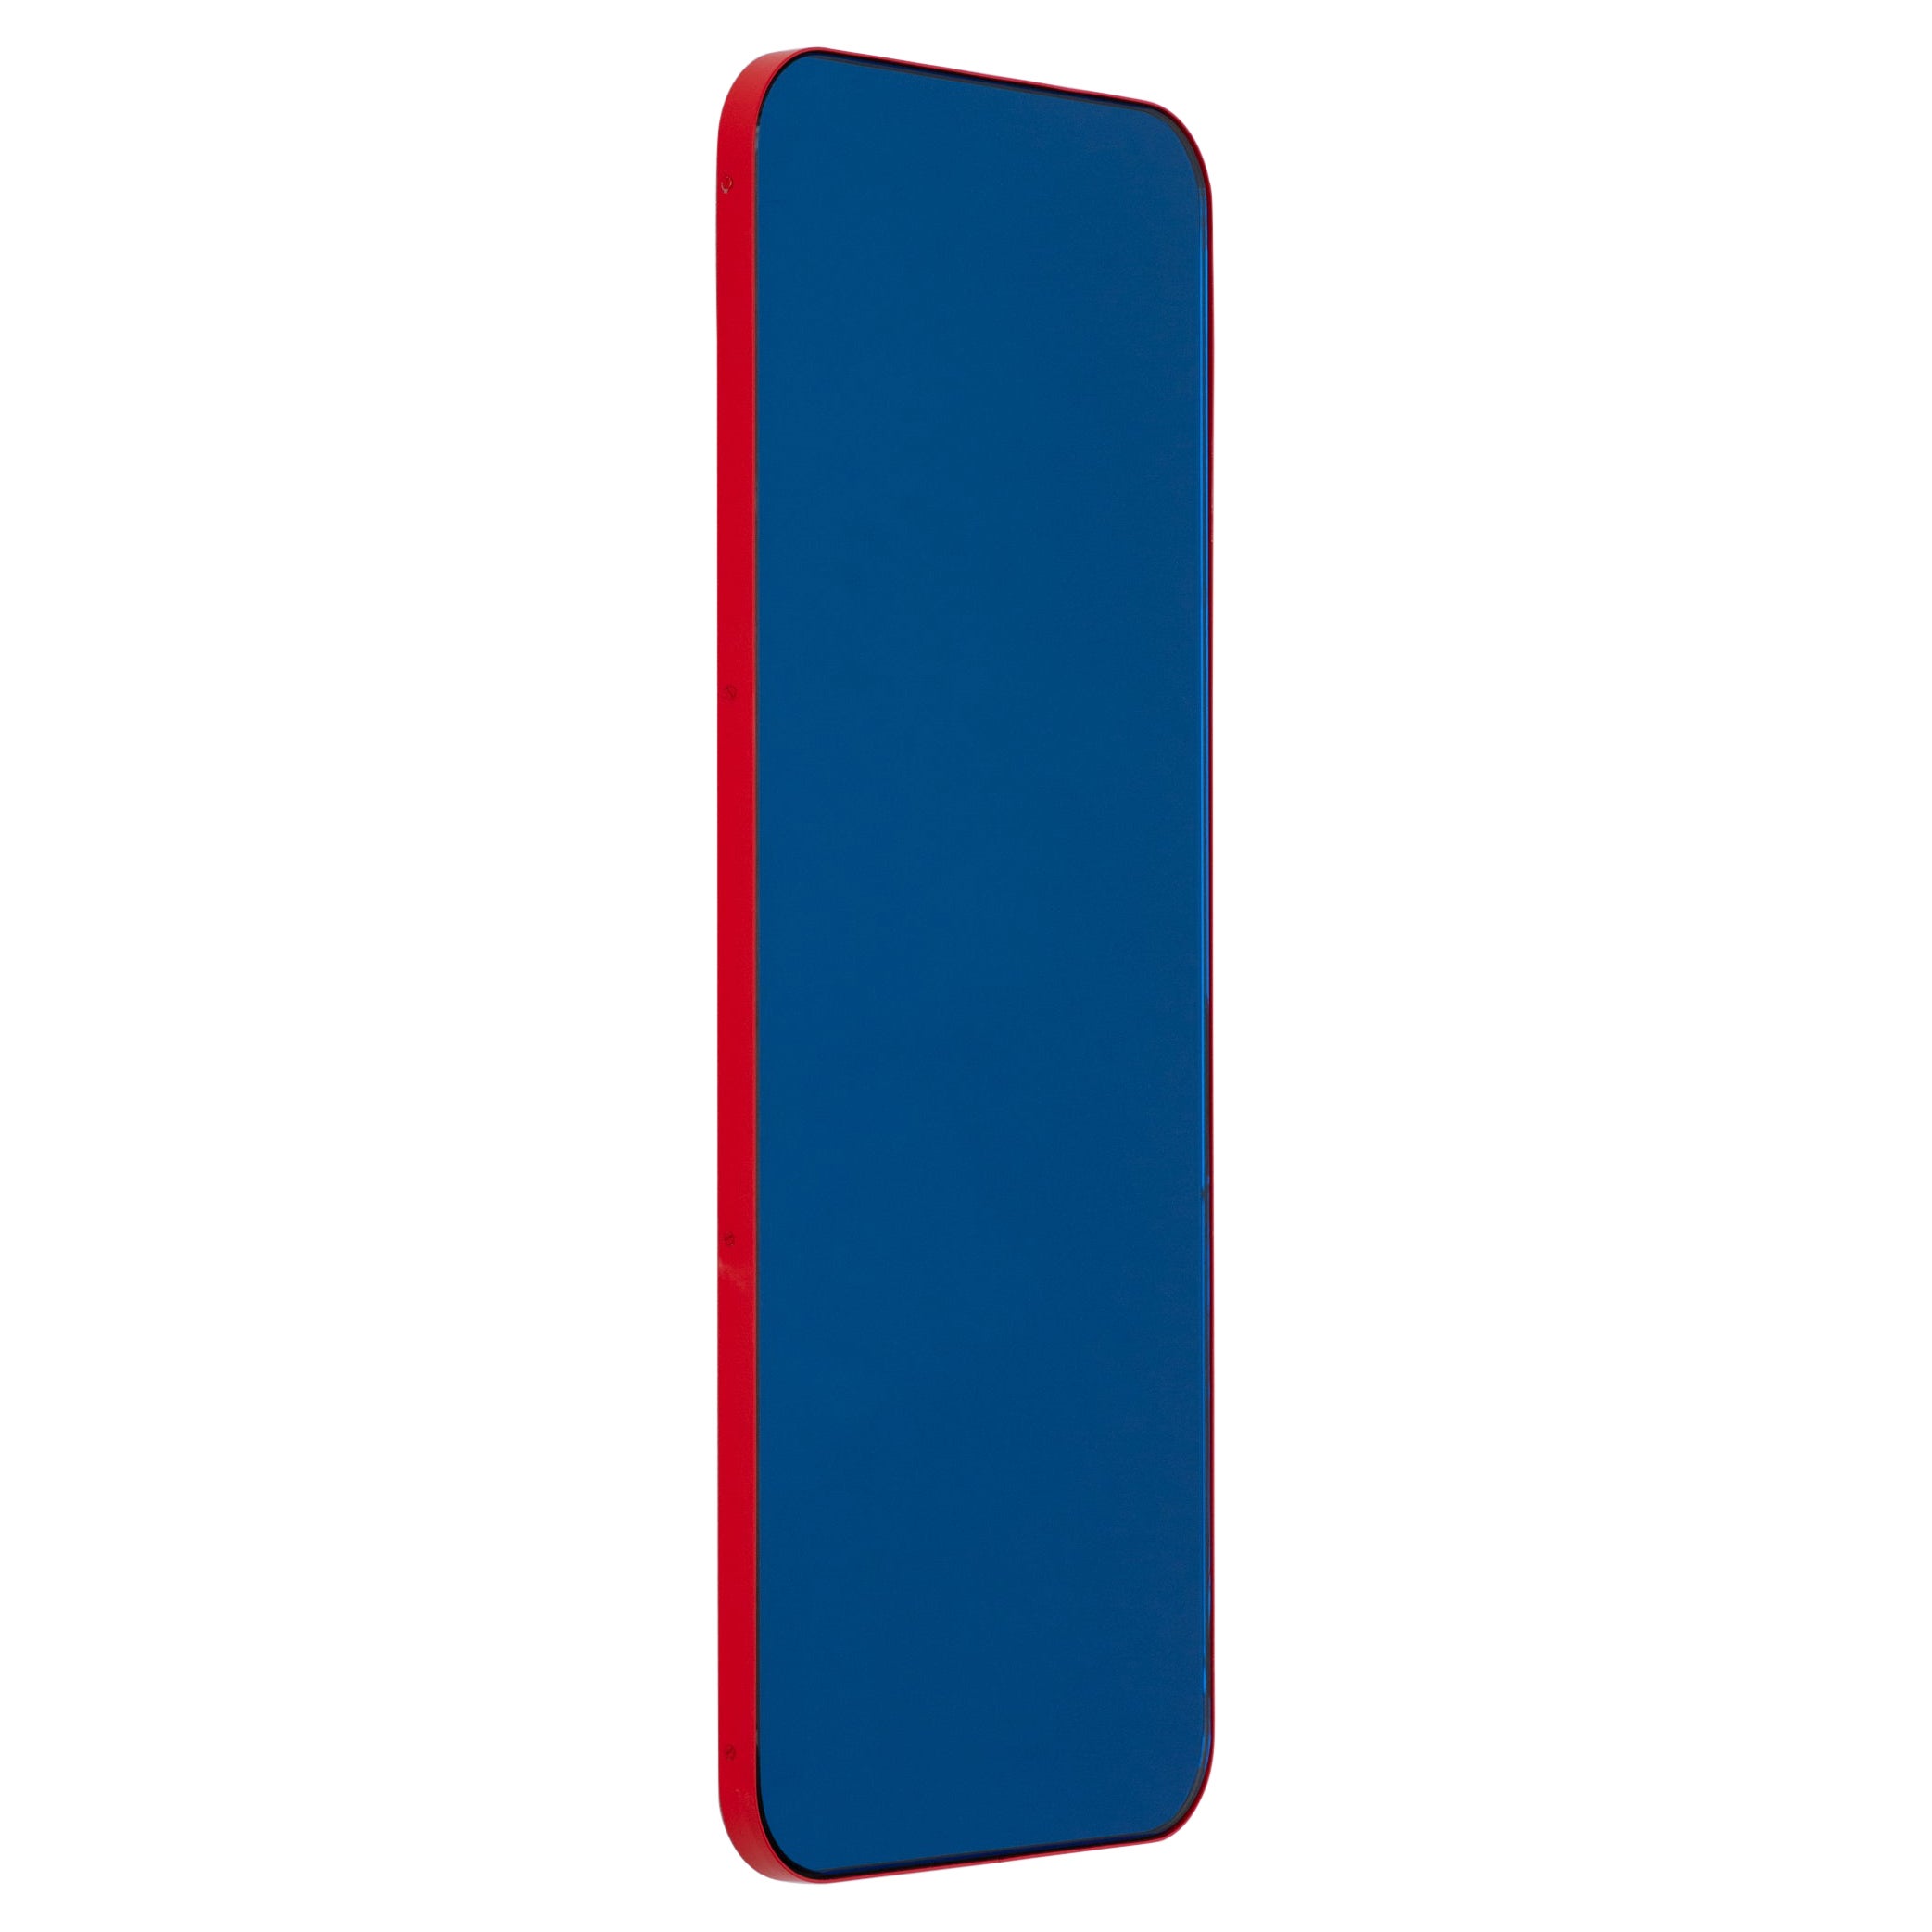 Miroir rectangulaire bleu avec cadre rouge moderne de la collection Quadris, moyen